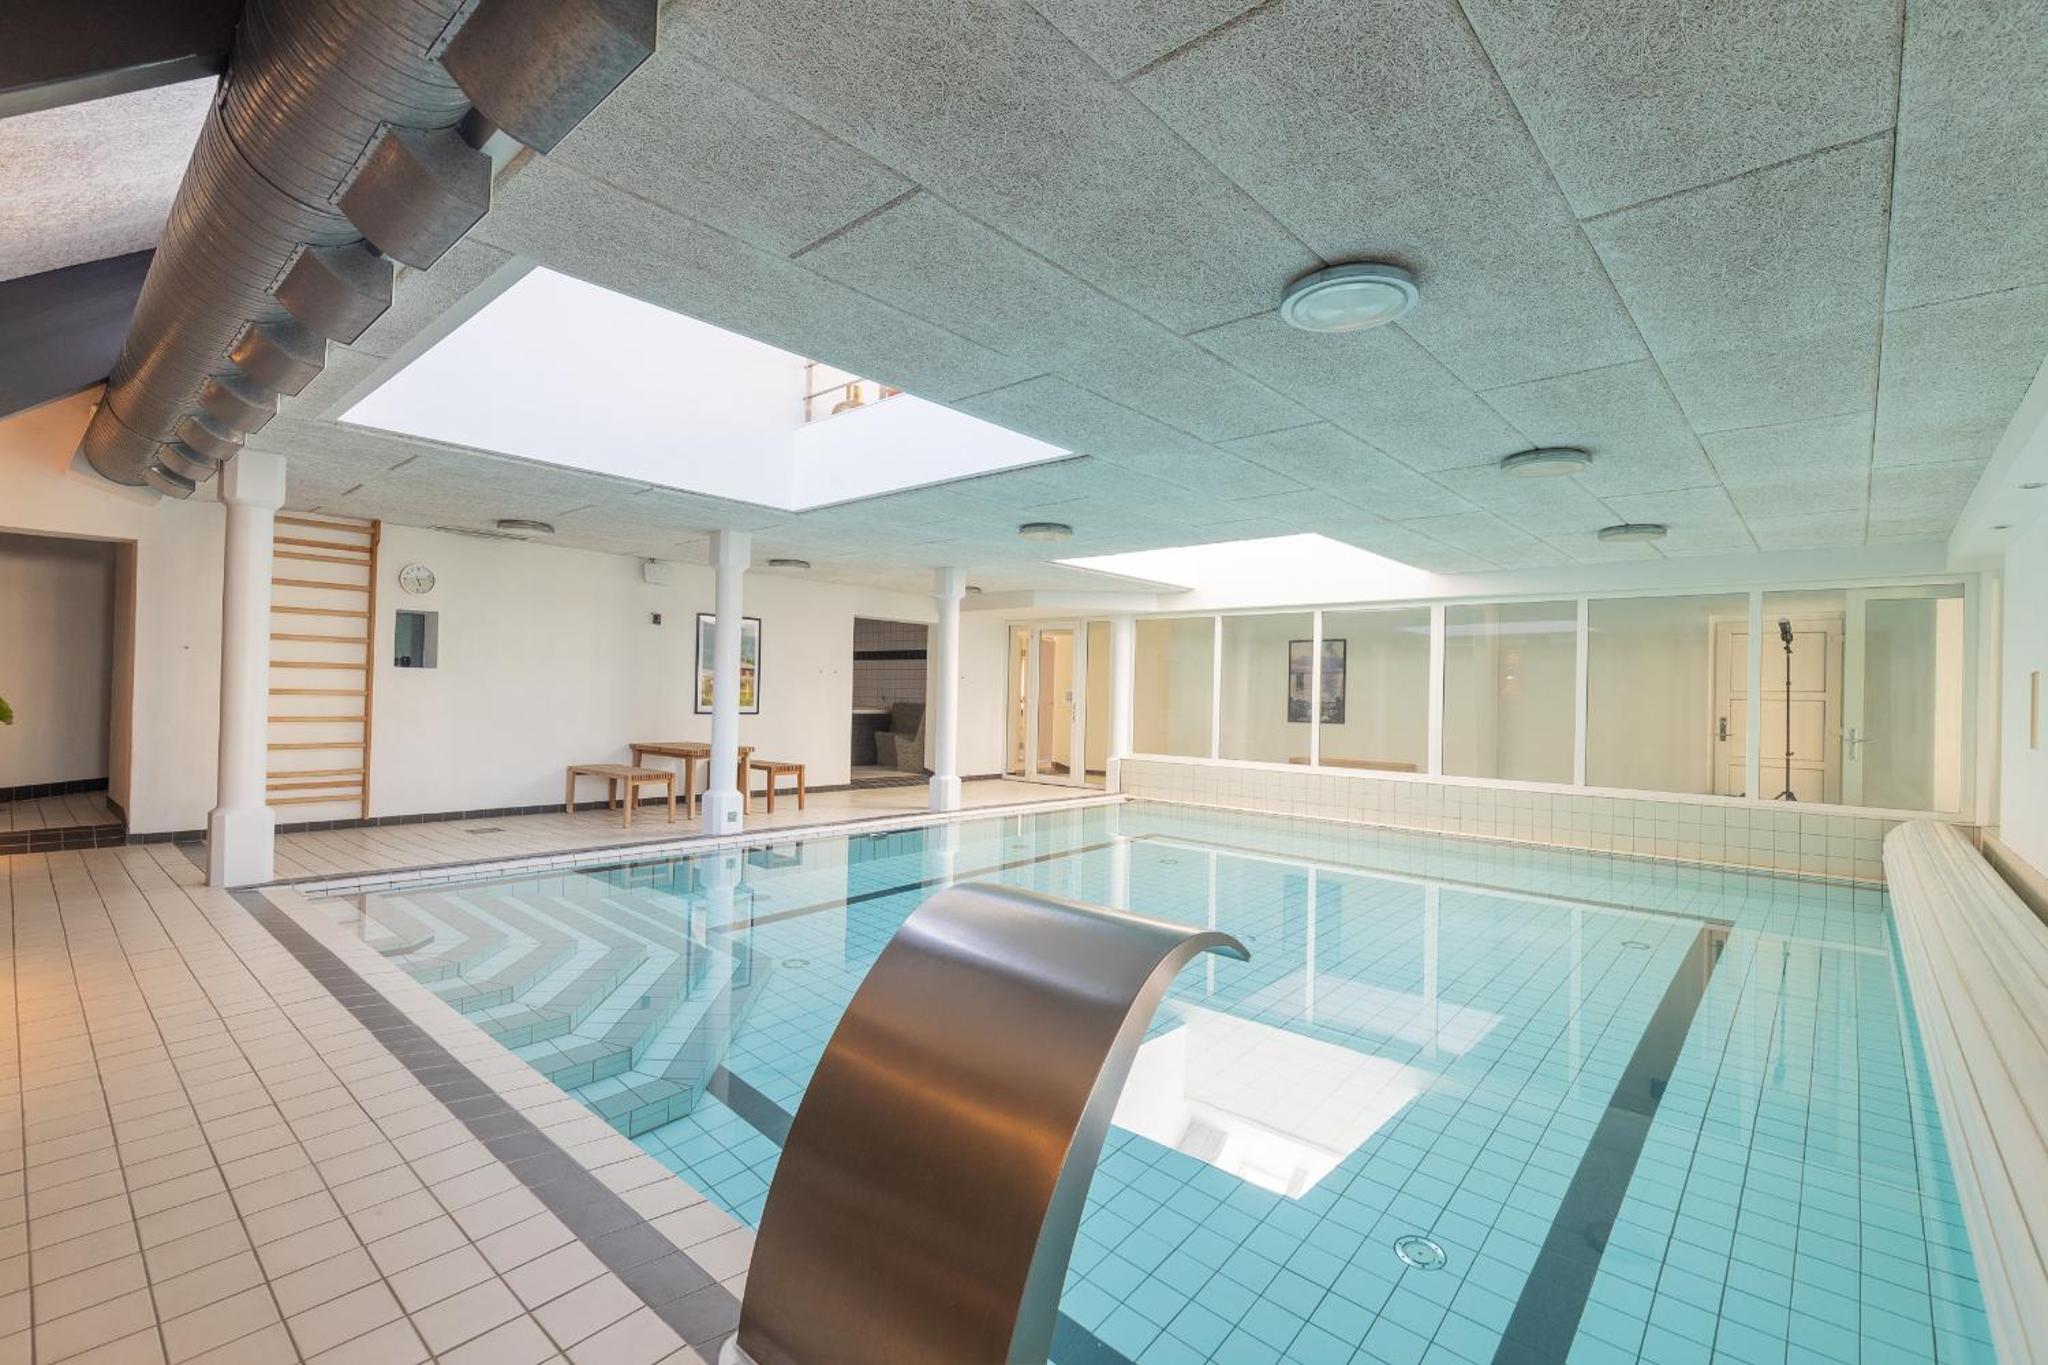 Langeland luksuslejlighed med pool og spa